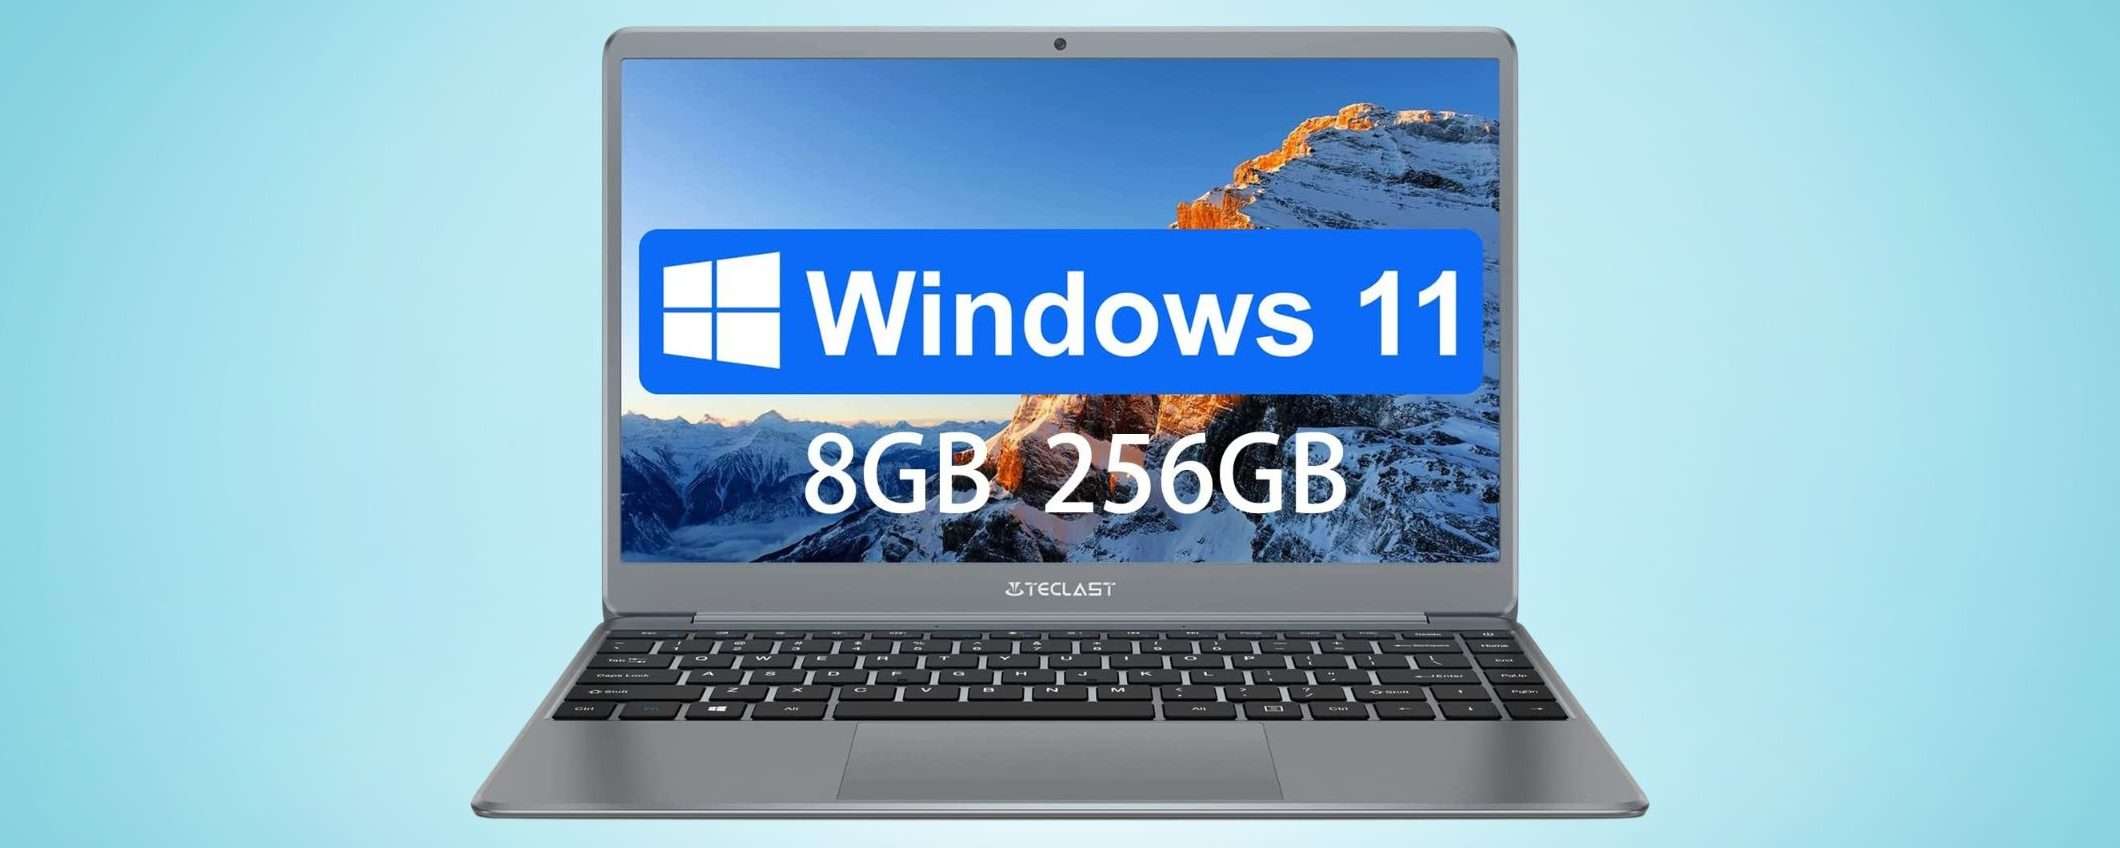 Questo laptop con Windows 11 ha un SUPER SCONTO e lo paghi pochissimo